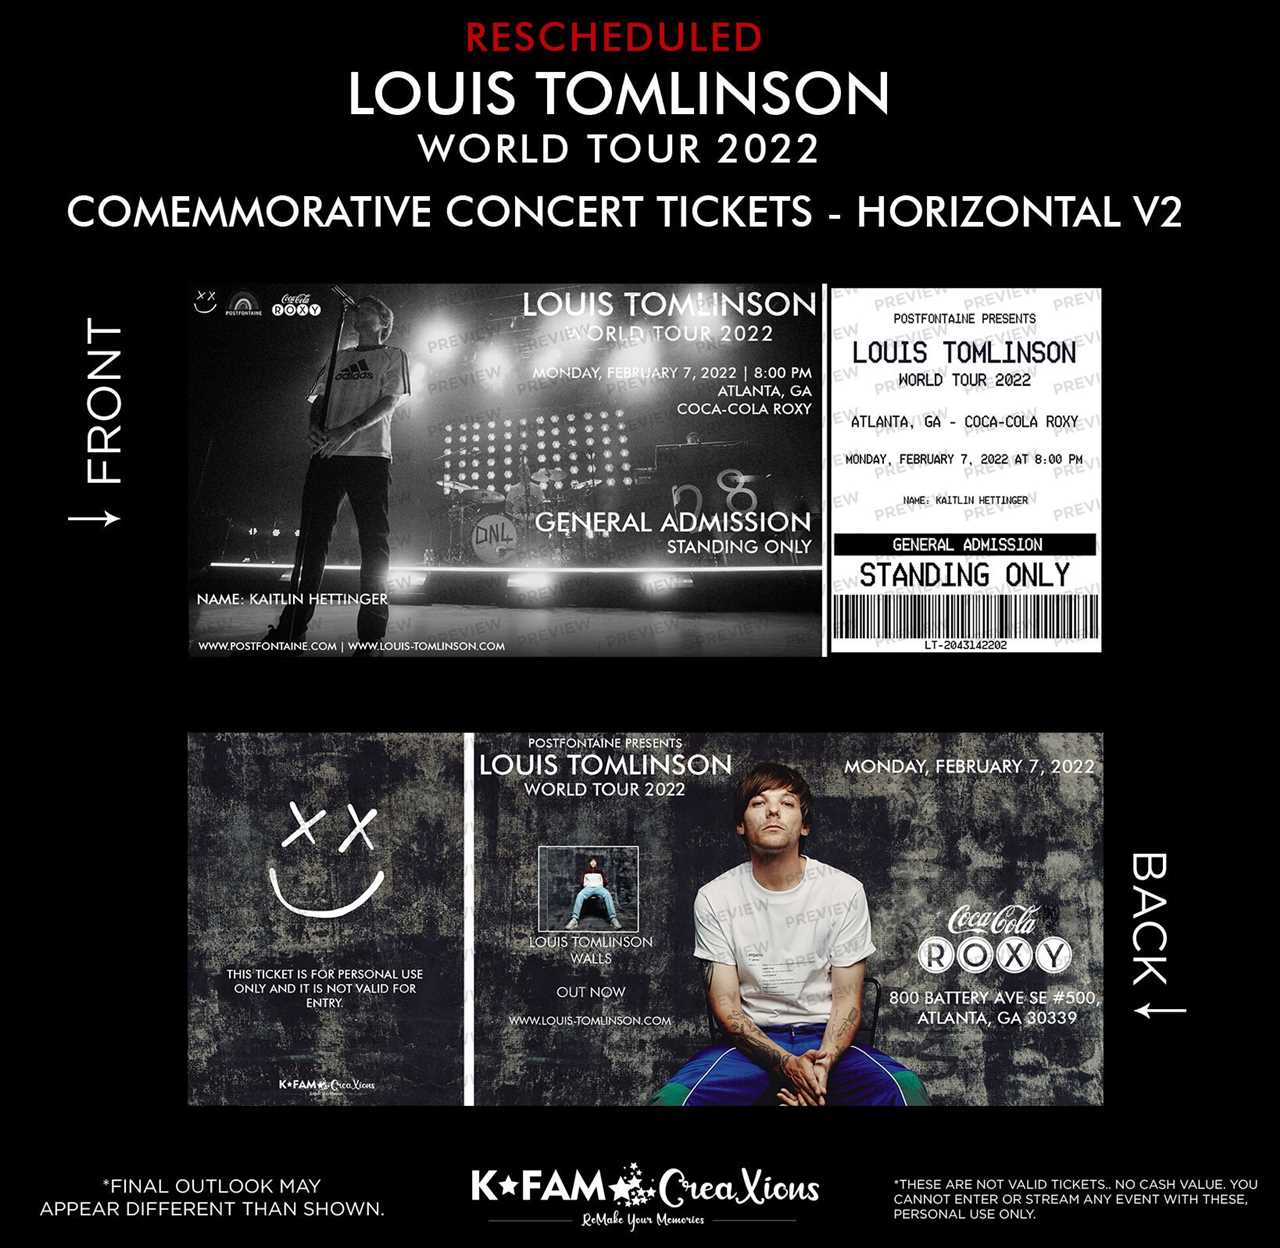 Kup bilety na koncert Louis Tomlinson już dziś!